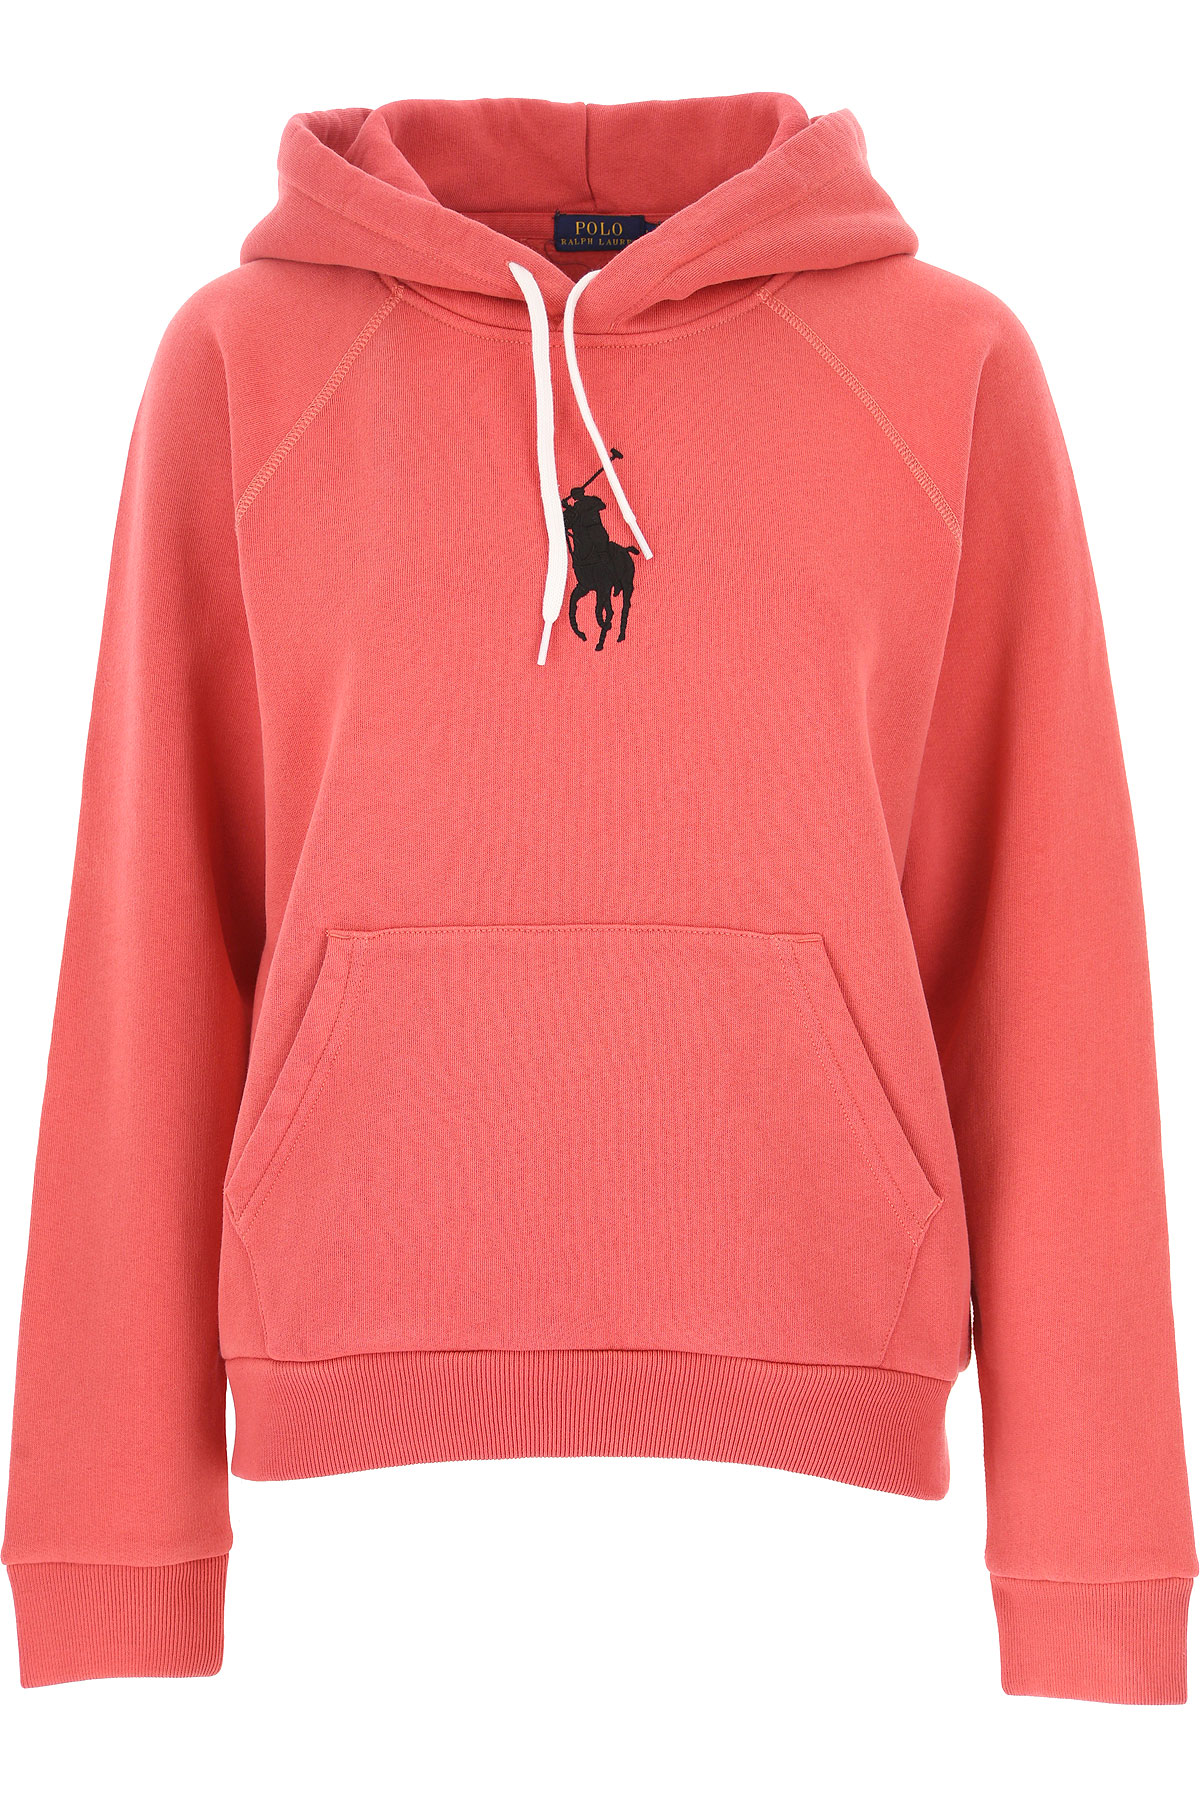 Ralph Lauren Sweatshirt für Damen, Kapuzenpulli, Hoodie, Sweats Günstig im Sale, Rot, Baumwolle, 2017, L XS